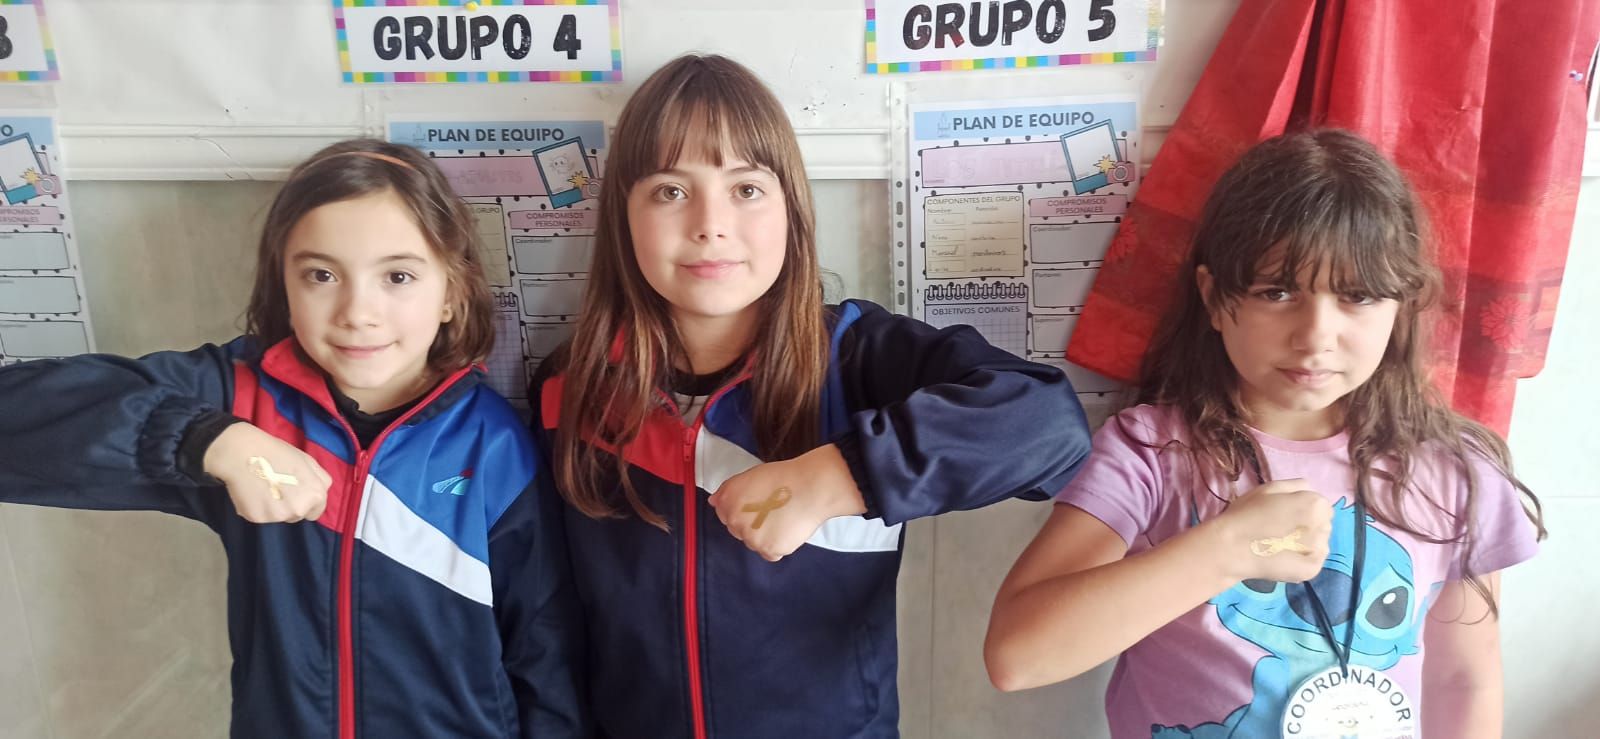 El colegio La Vega de Benavente manda su "fuerza" a los niños que luchan contra el cáncer